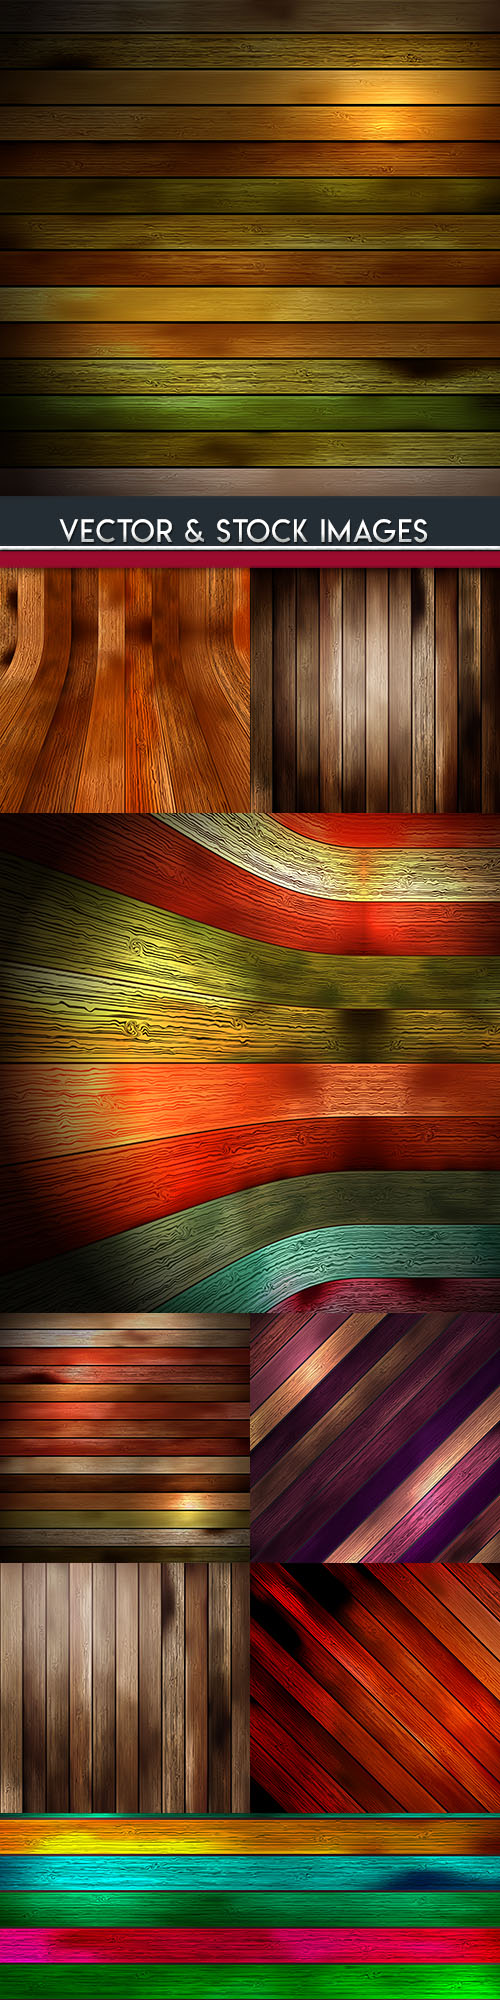 Wooden boards design color backgrounds